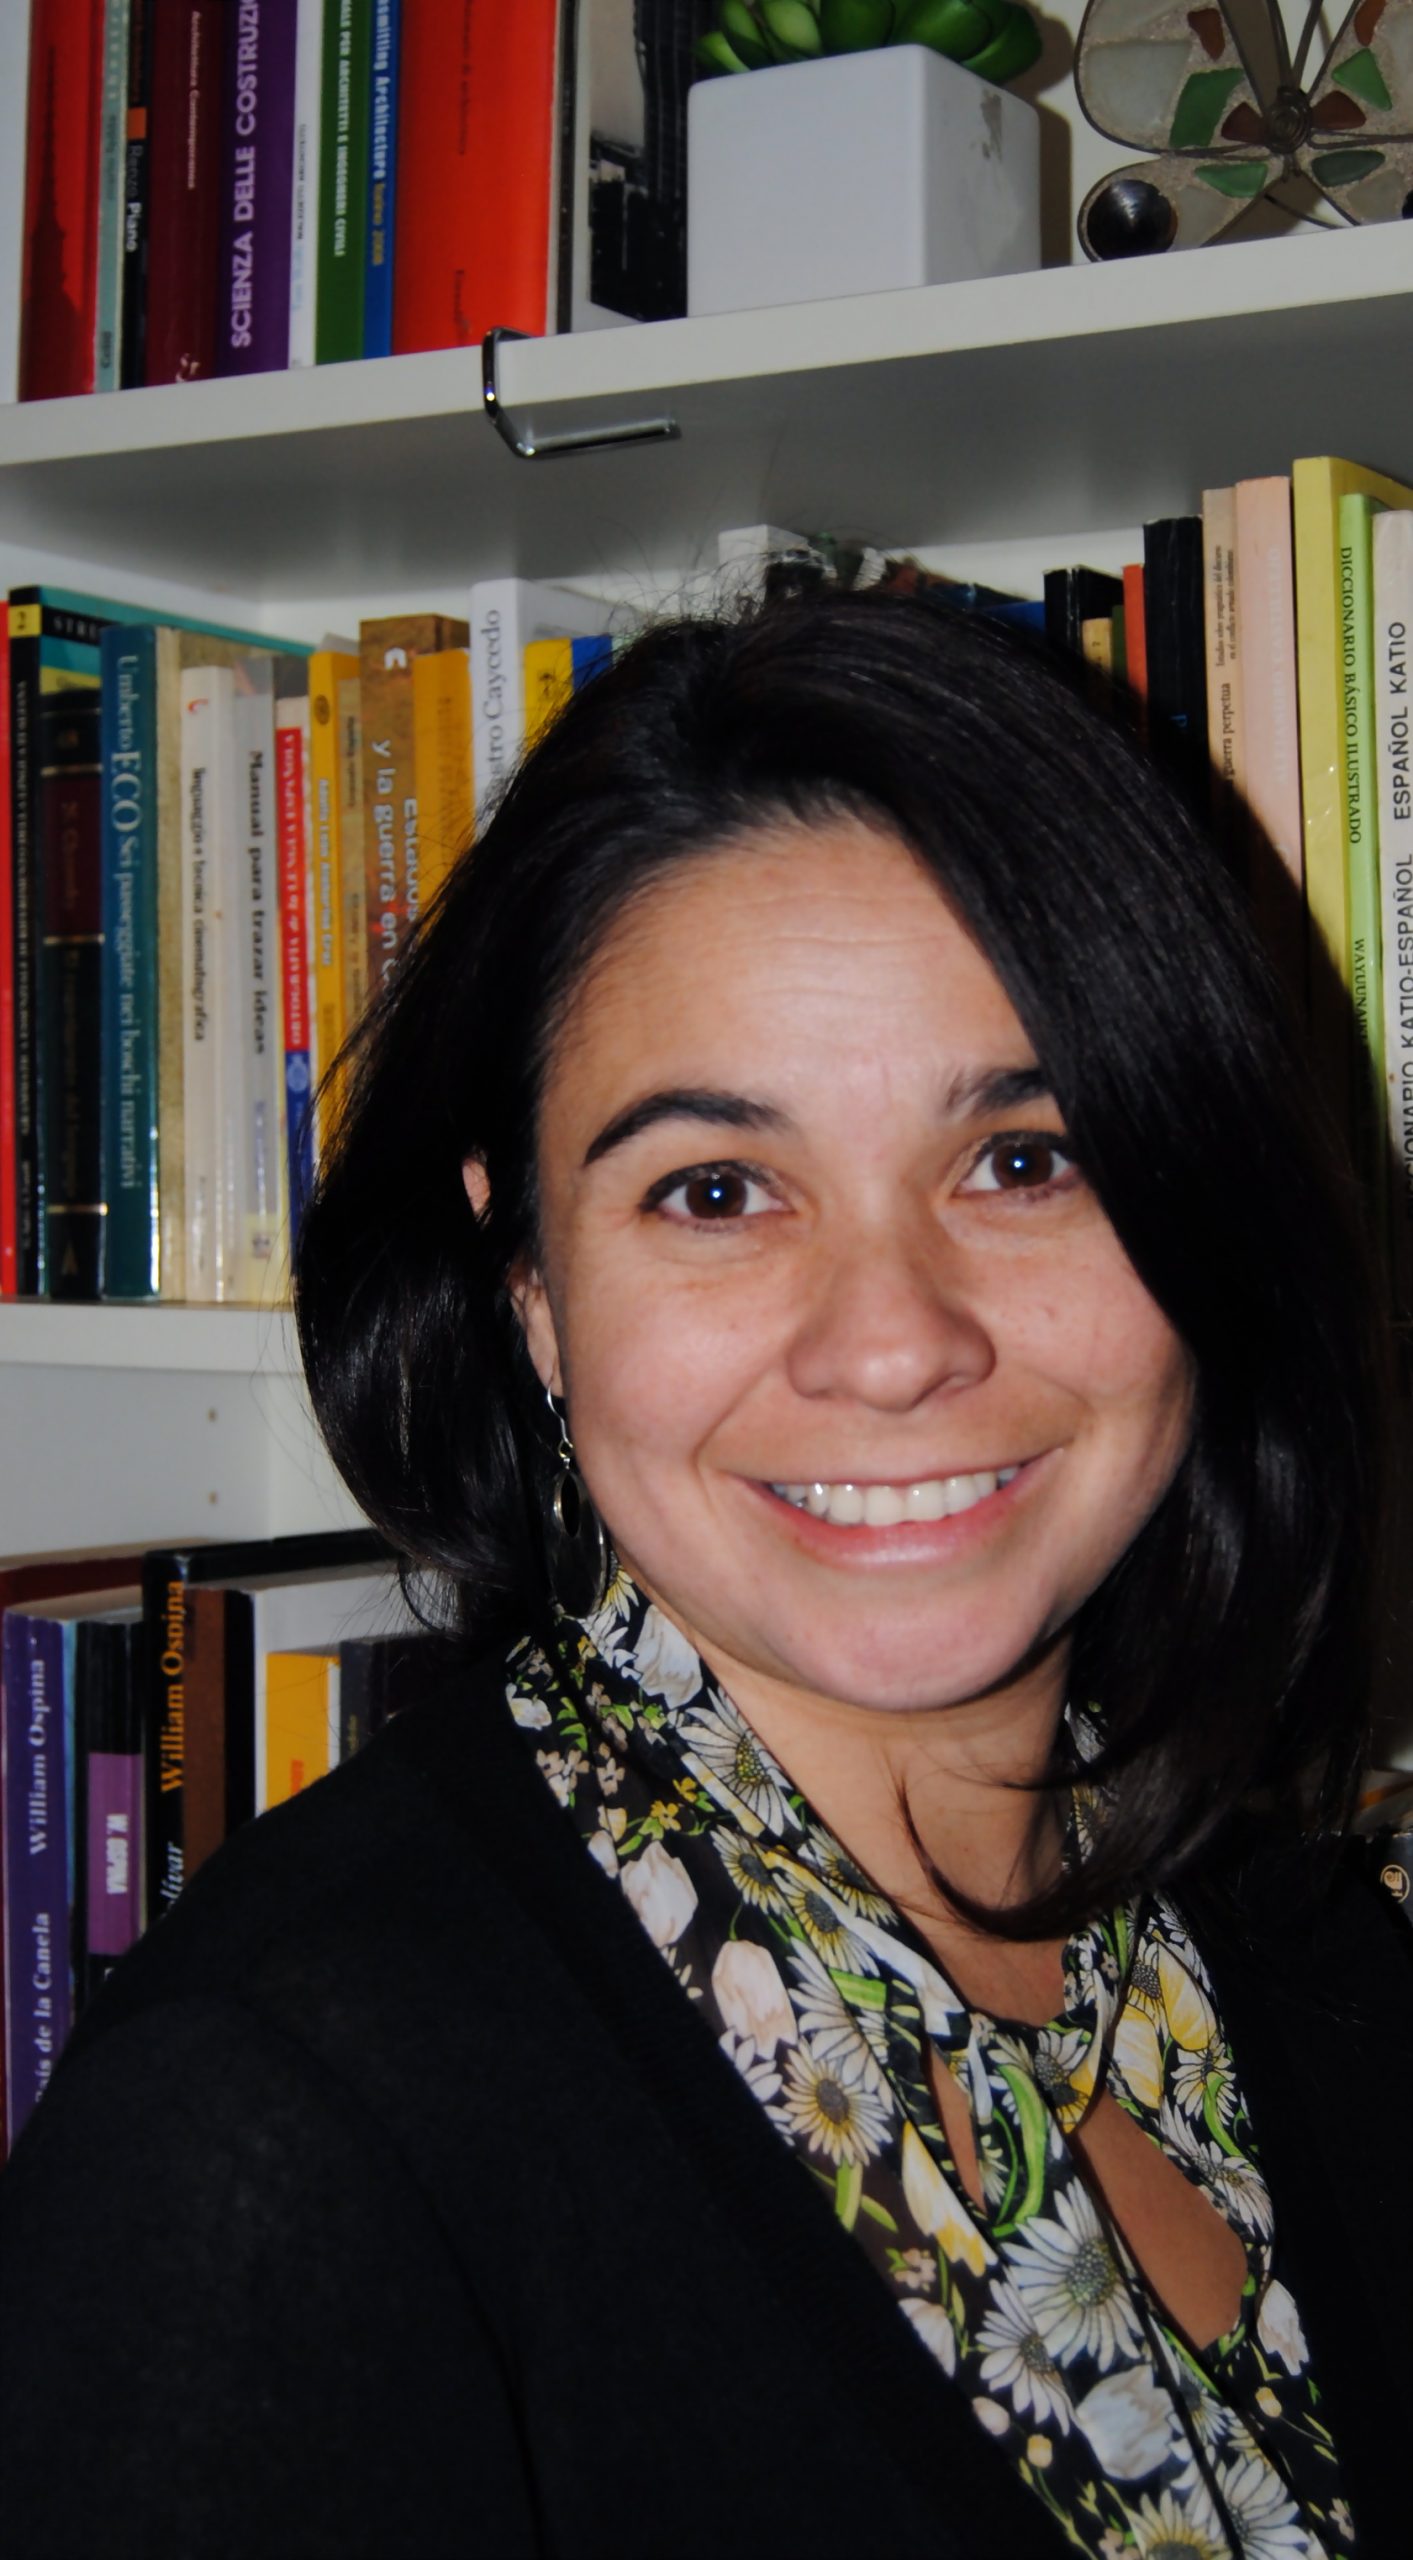 La studiosa Ana Cristina Vargas è Direttrice della Fondazione Fabretti di Torino, un&#39;istituzione culturale che opera nel campo della tanatologia, ... - Vargas1